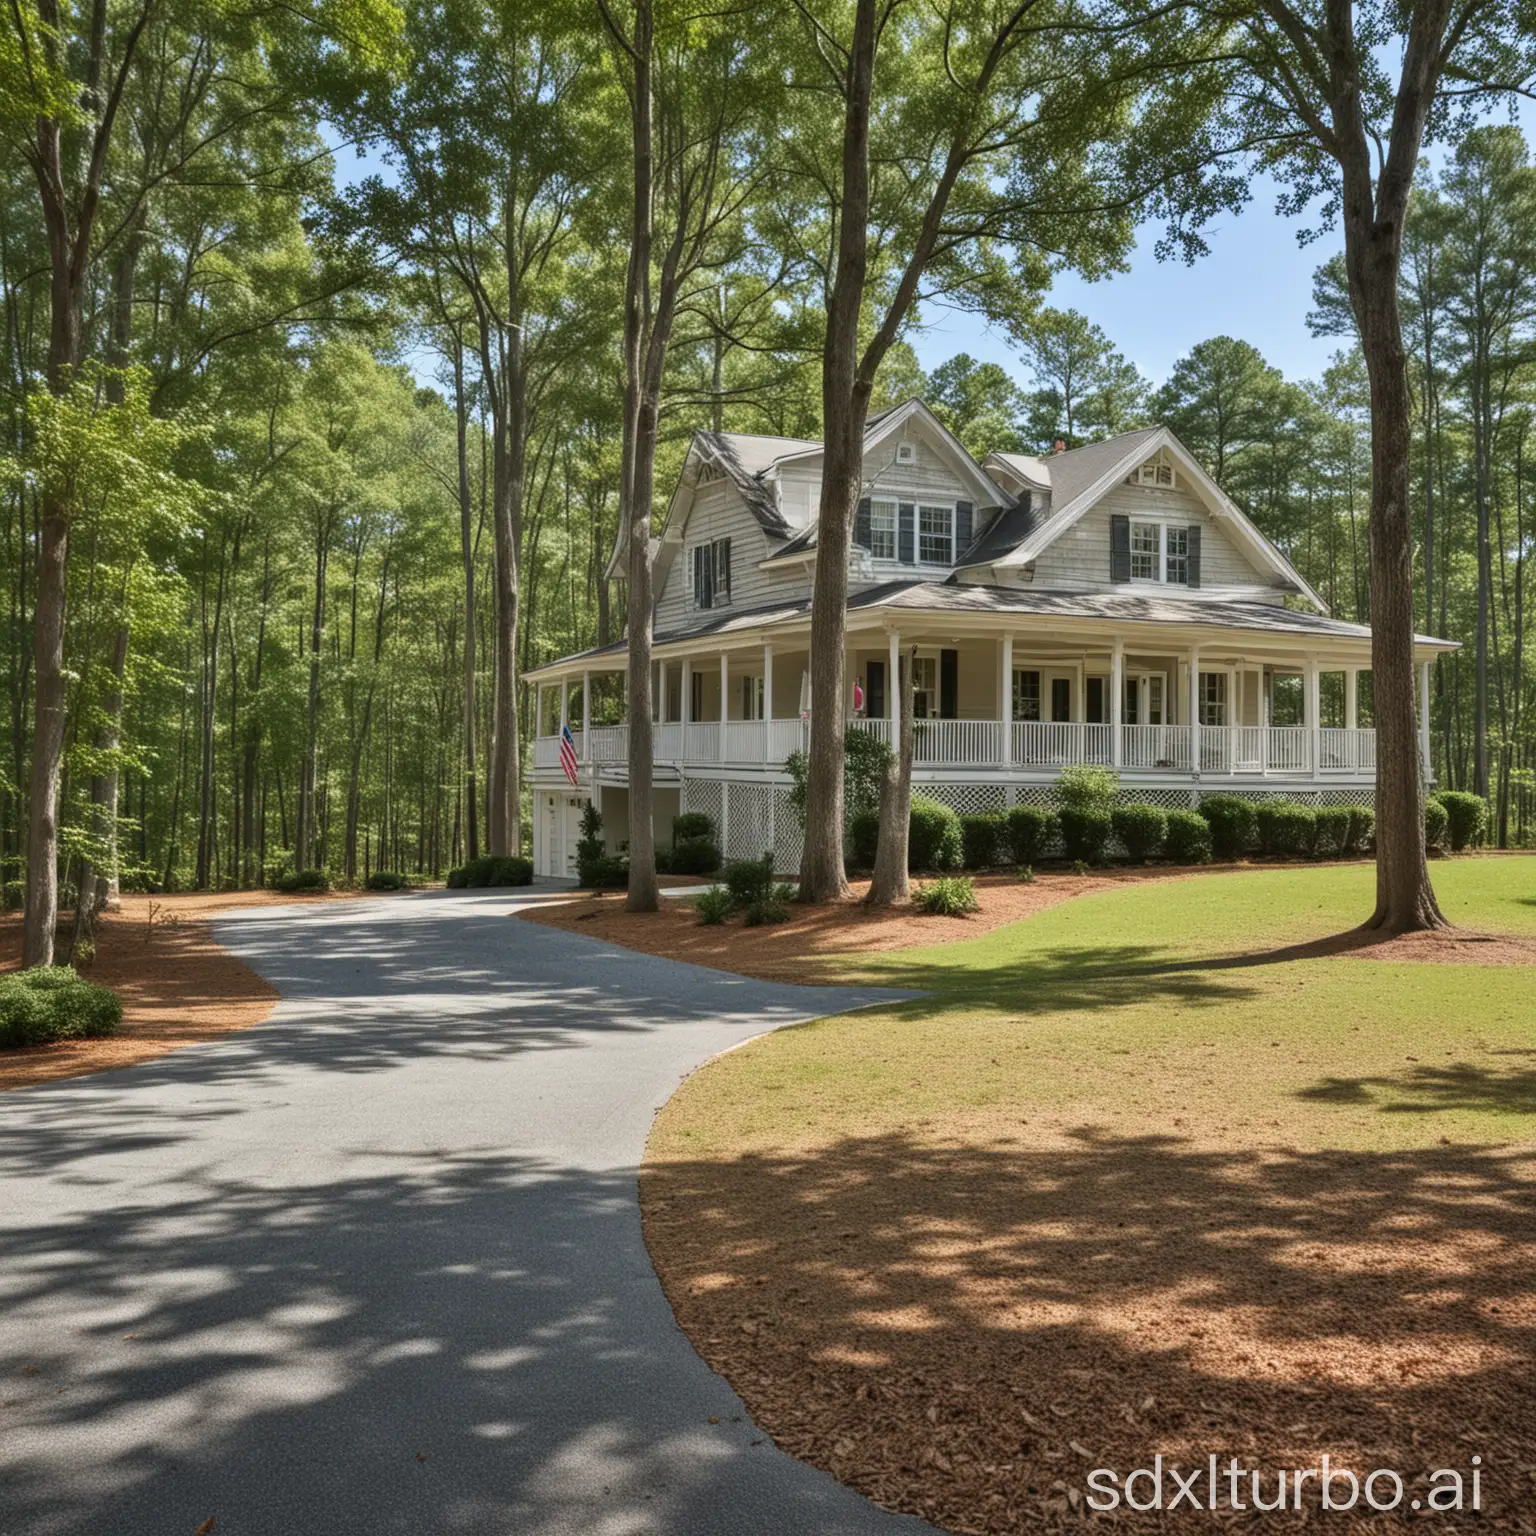 North-Carolina-Homes-for-Sale-Coastal-Living-Dream-Houses-with-Beach-Views